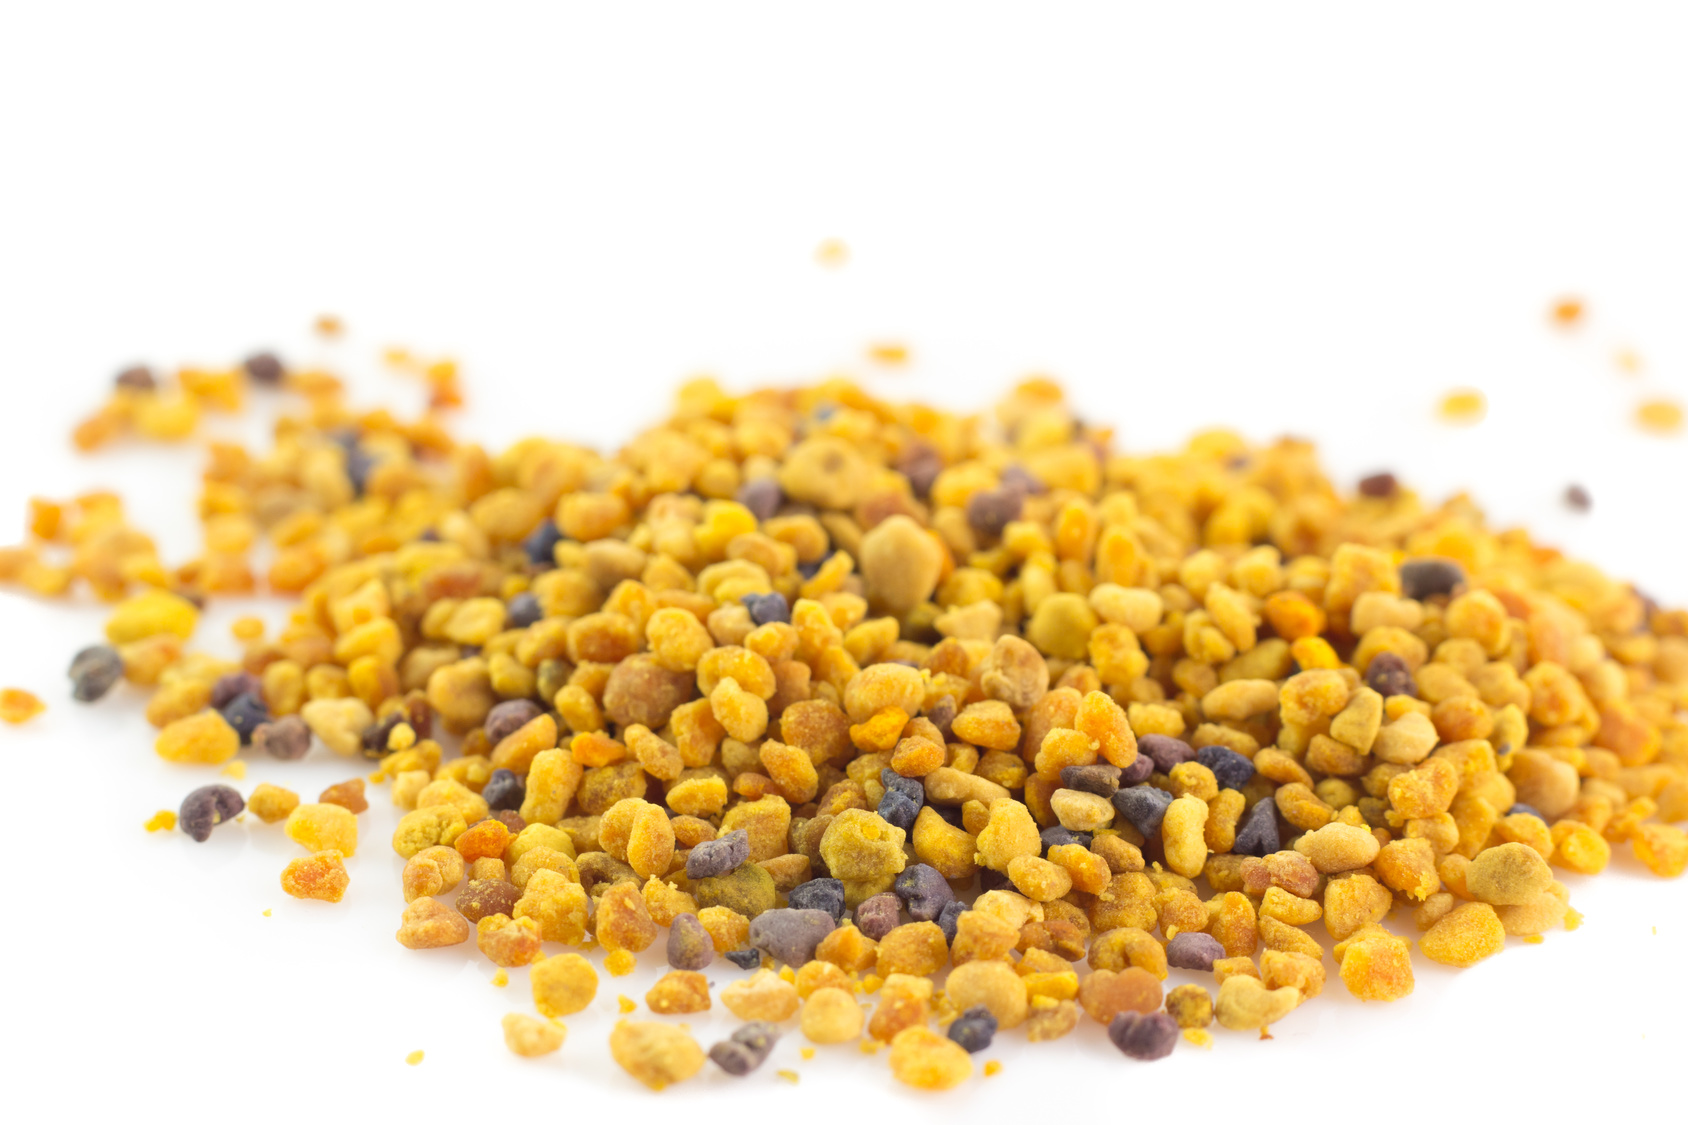 Manger du pollen frais : quelles sont ses vertus nutritionnelles ? © Lunipa, fotolia